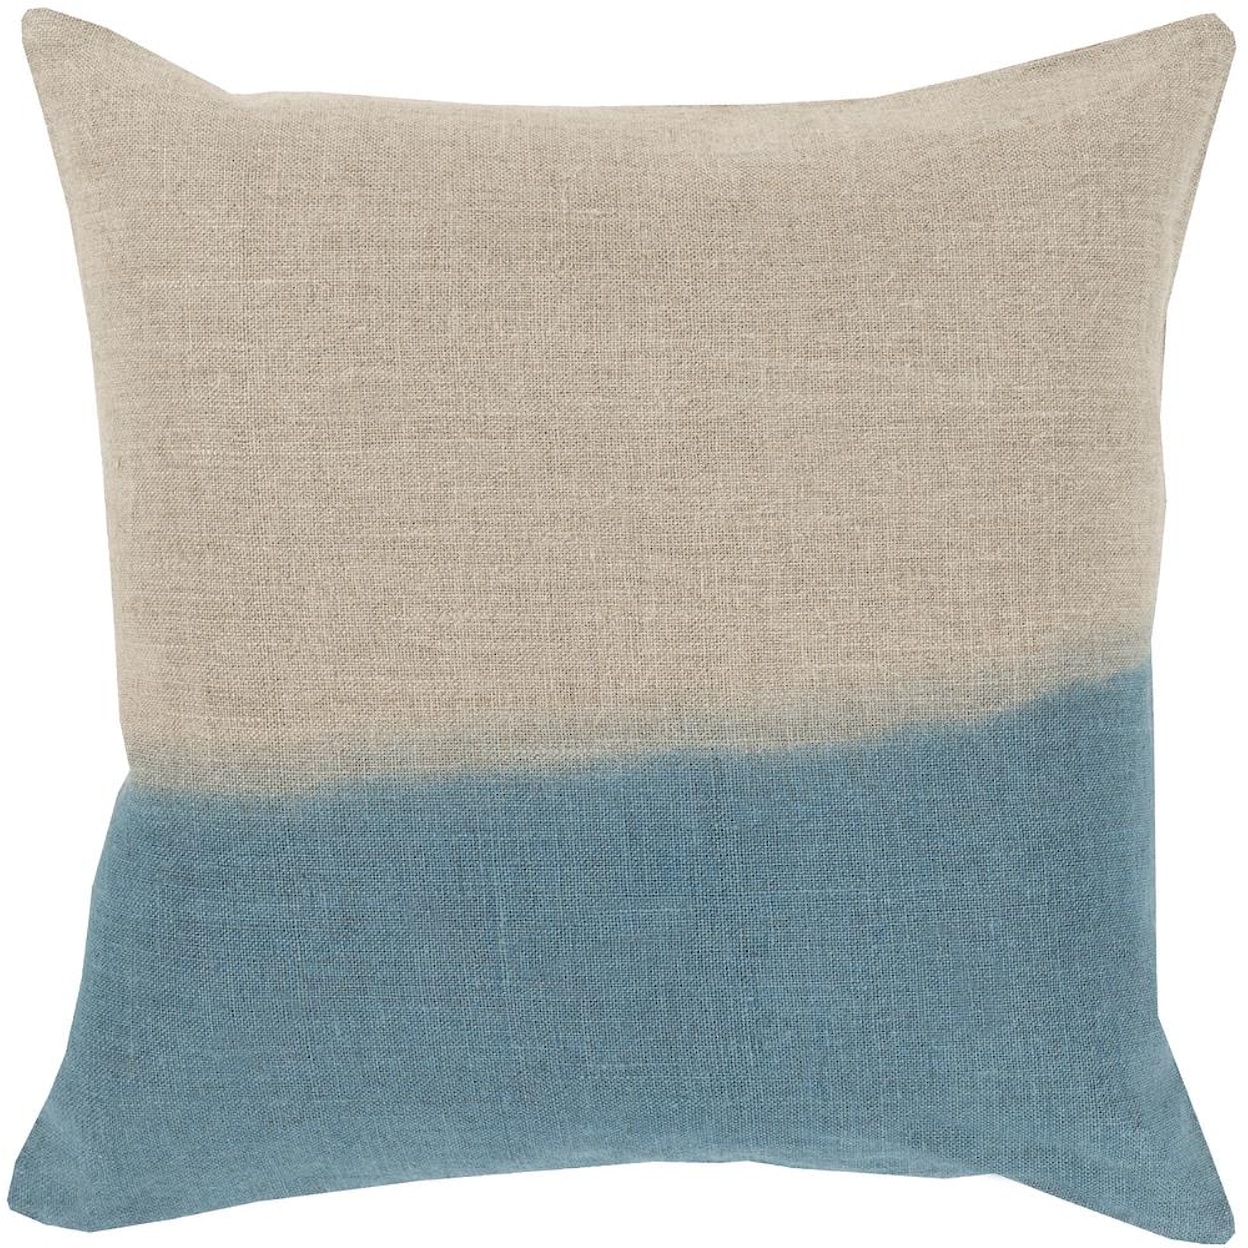 Surya Pillows 18" x 18" Dip Dyed Pillow